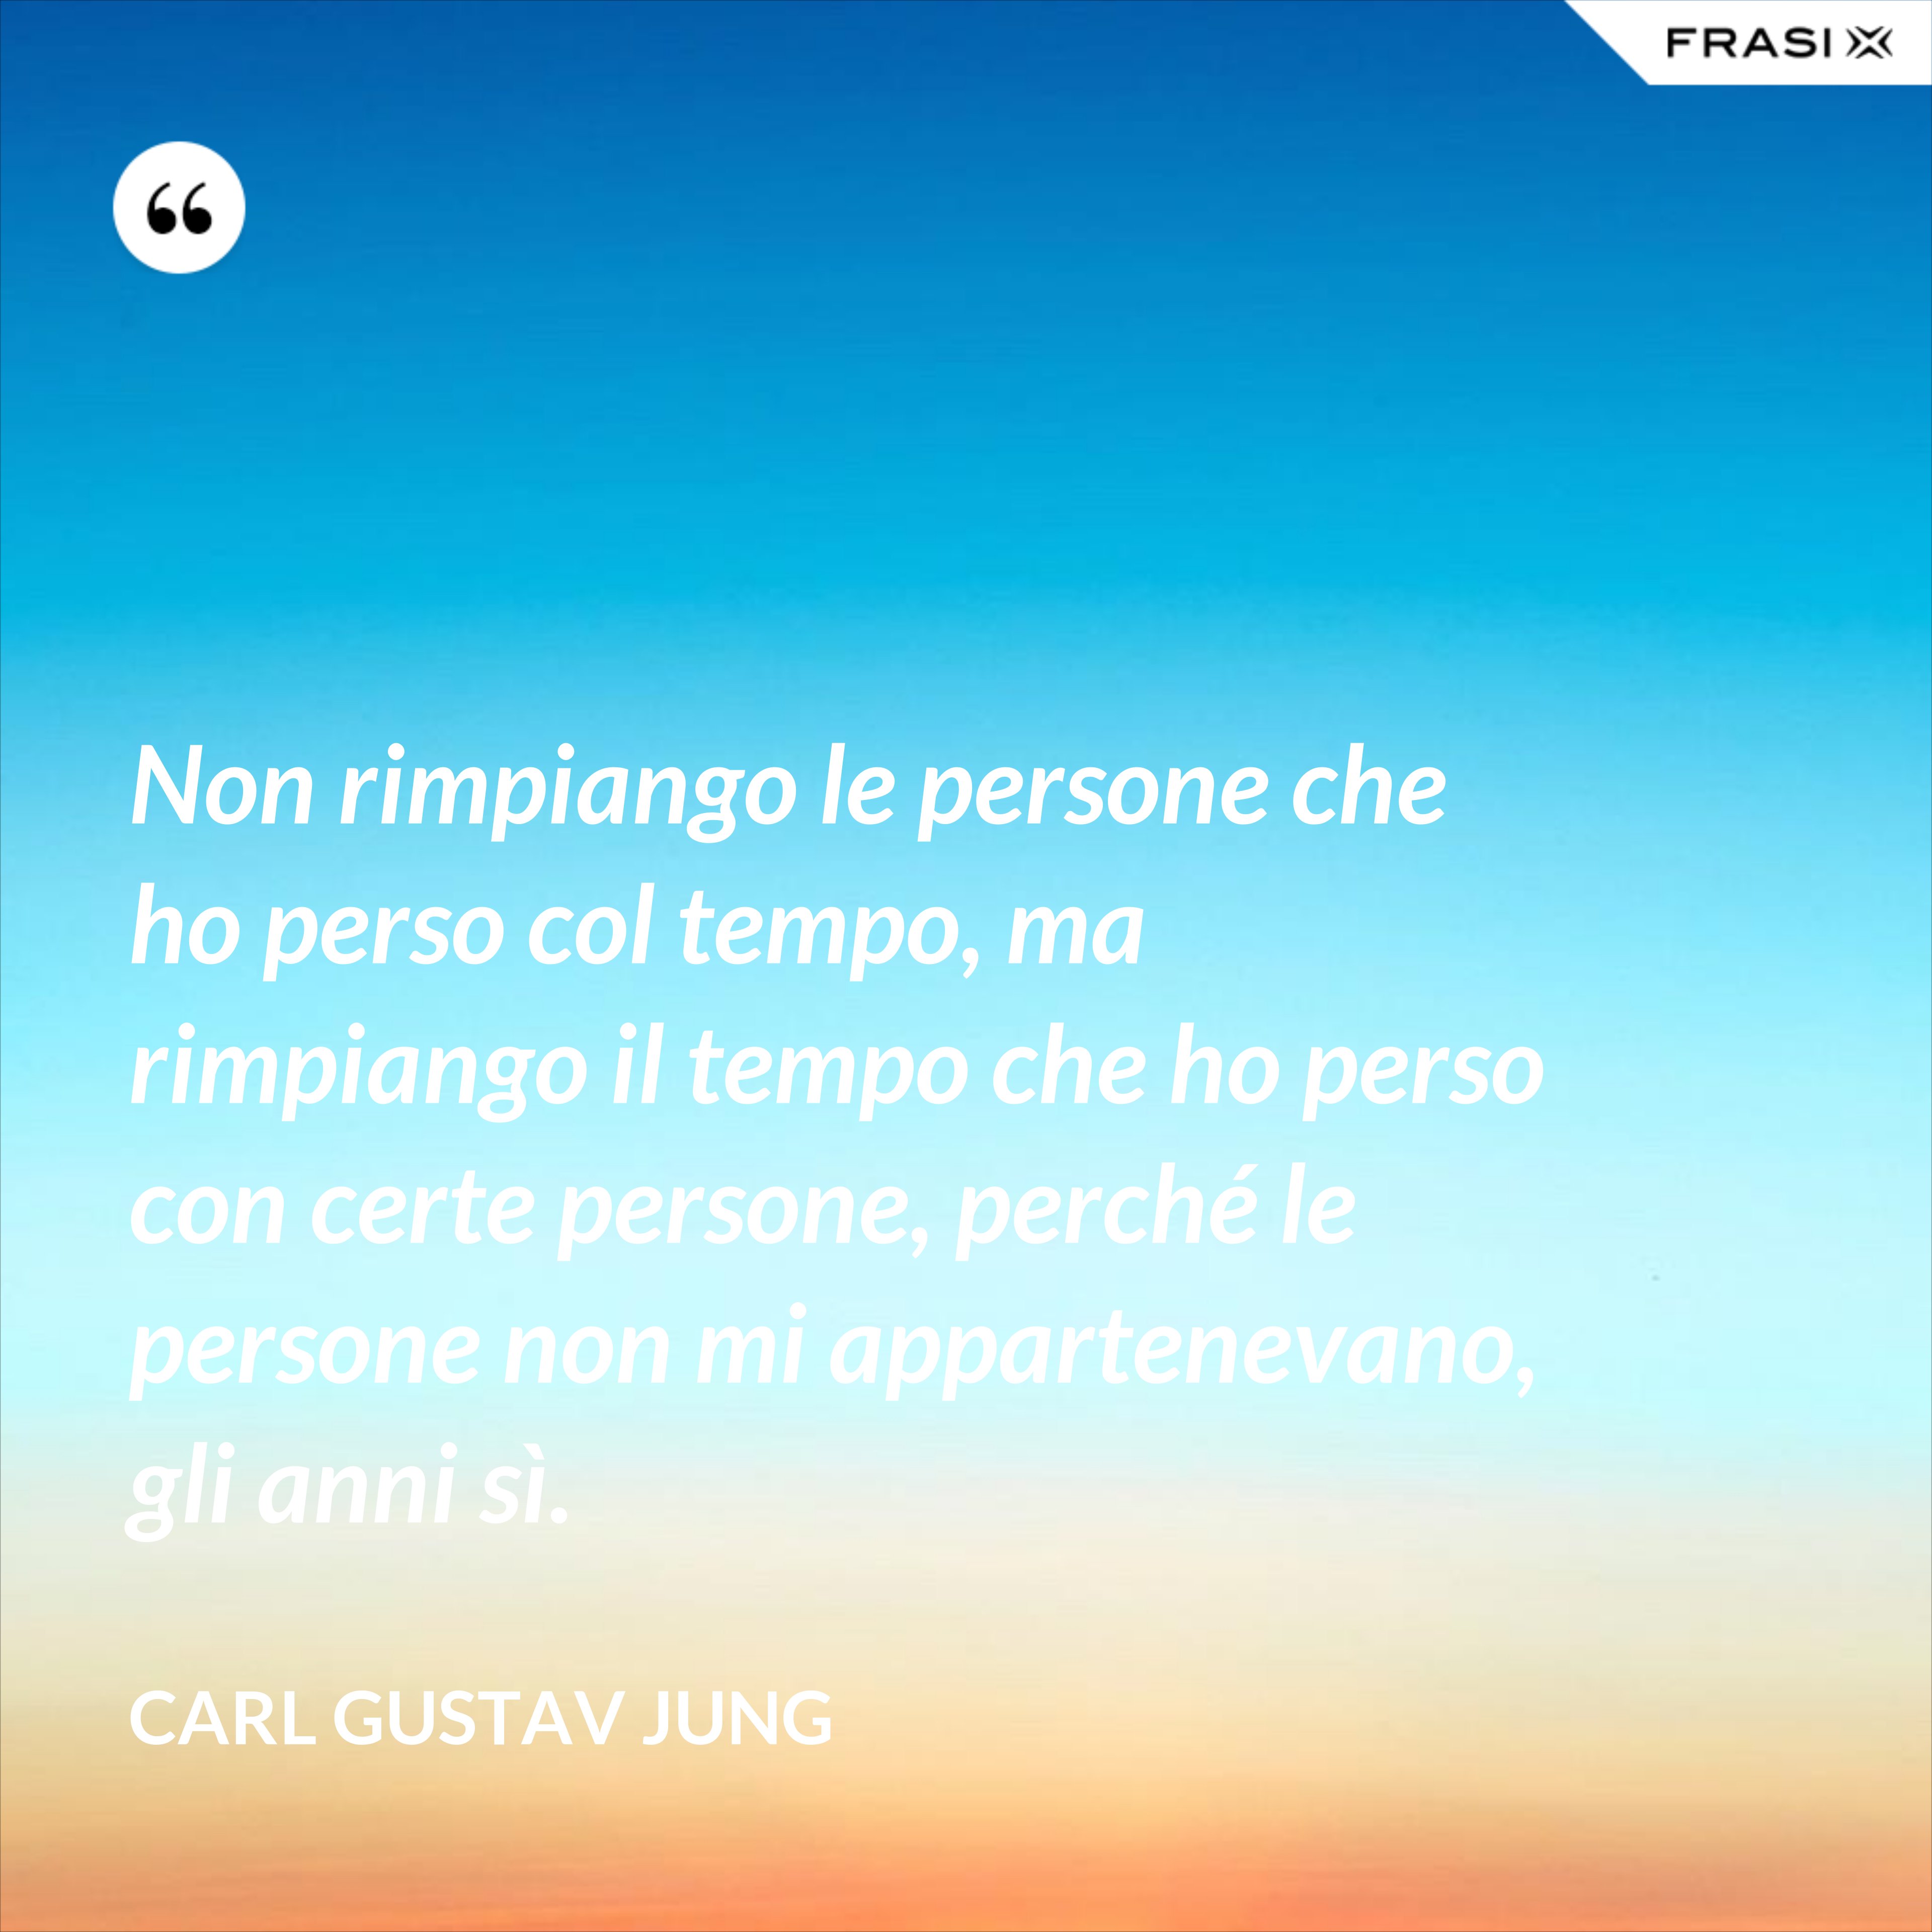 Non rimpiango le persone che ho perso col tempo, ma rimpiango il tempo che ho perso con certe persone, perché le persone non mi appartenevano, gli anni sì. - Carl Gustav Jung